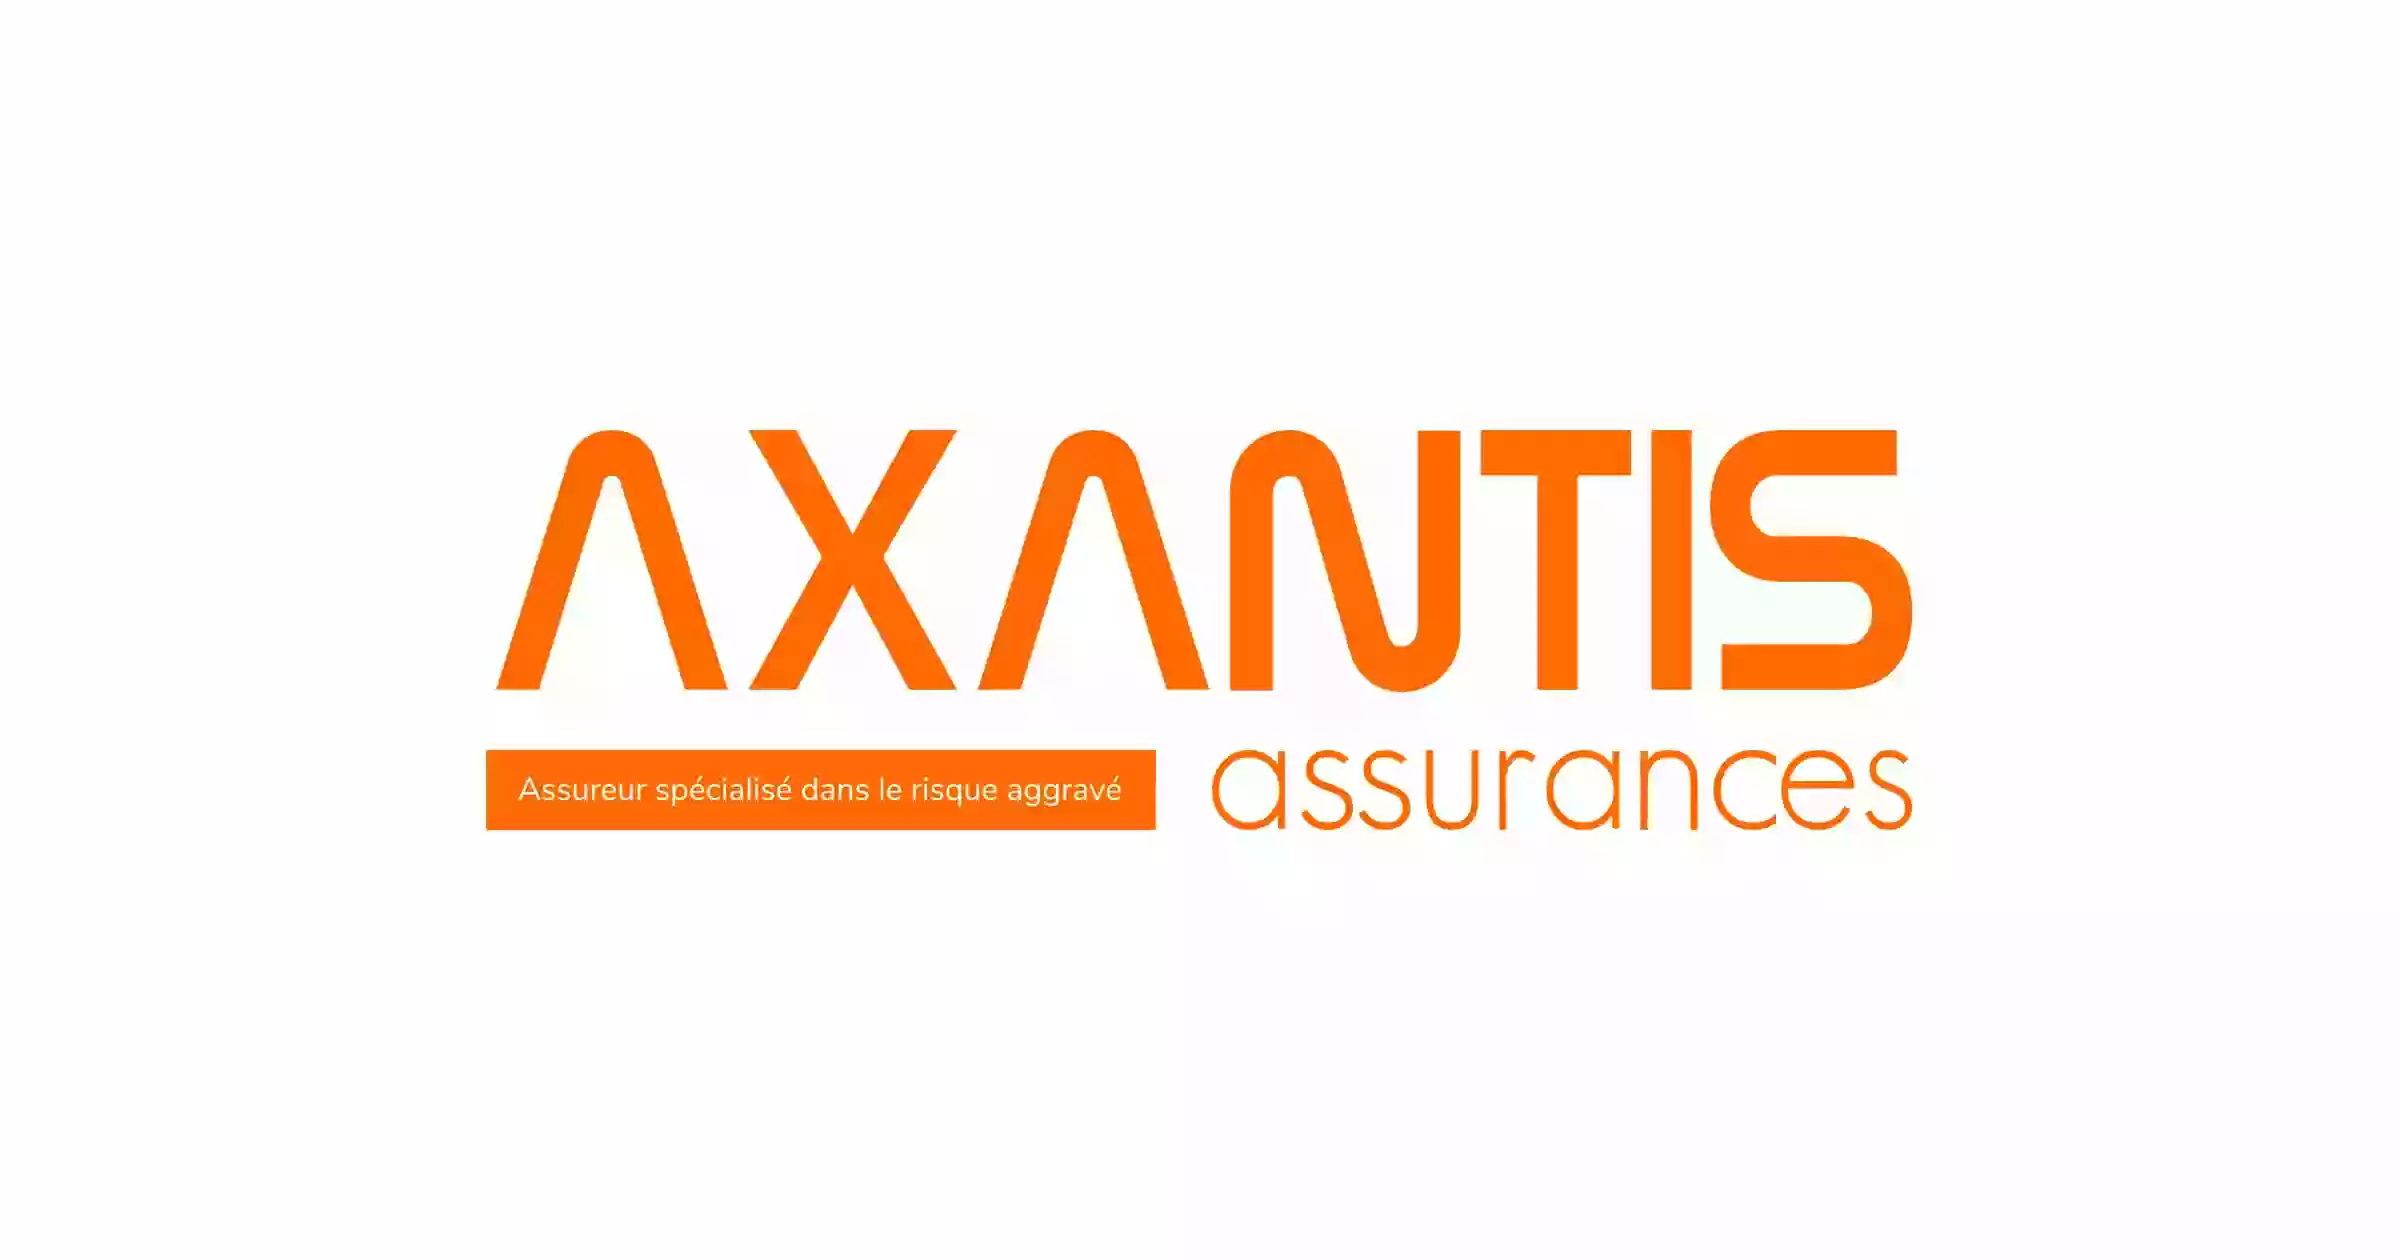 Axantis Assurances - Courtier spécialiste des risques aggravés et assurances temporaires